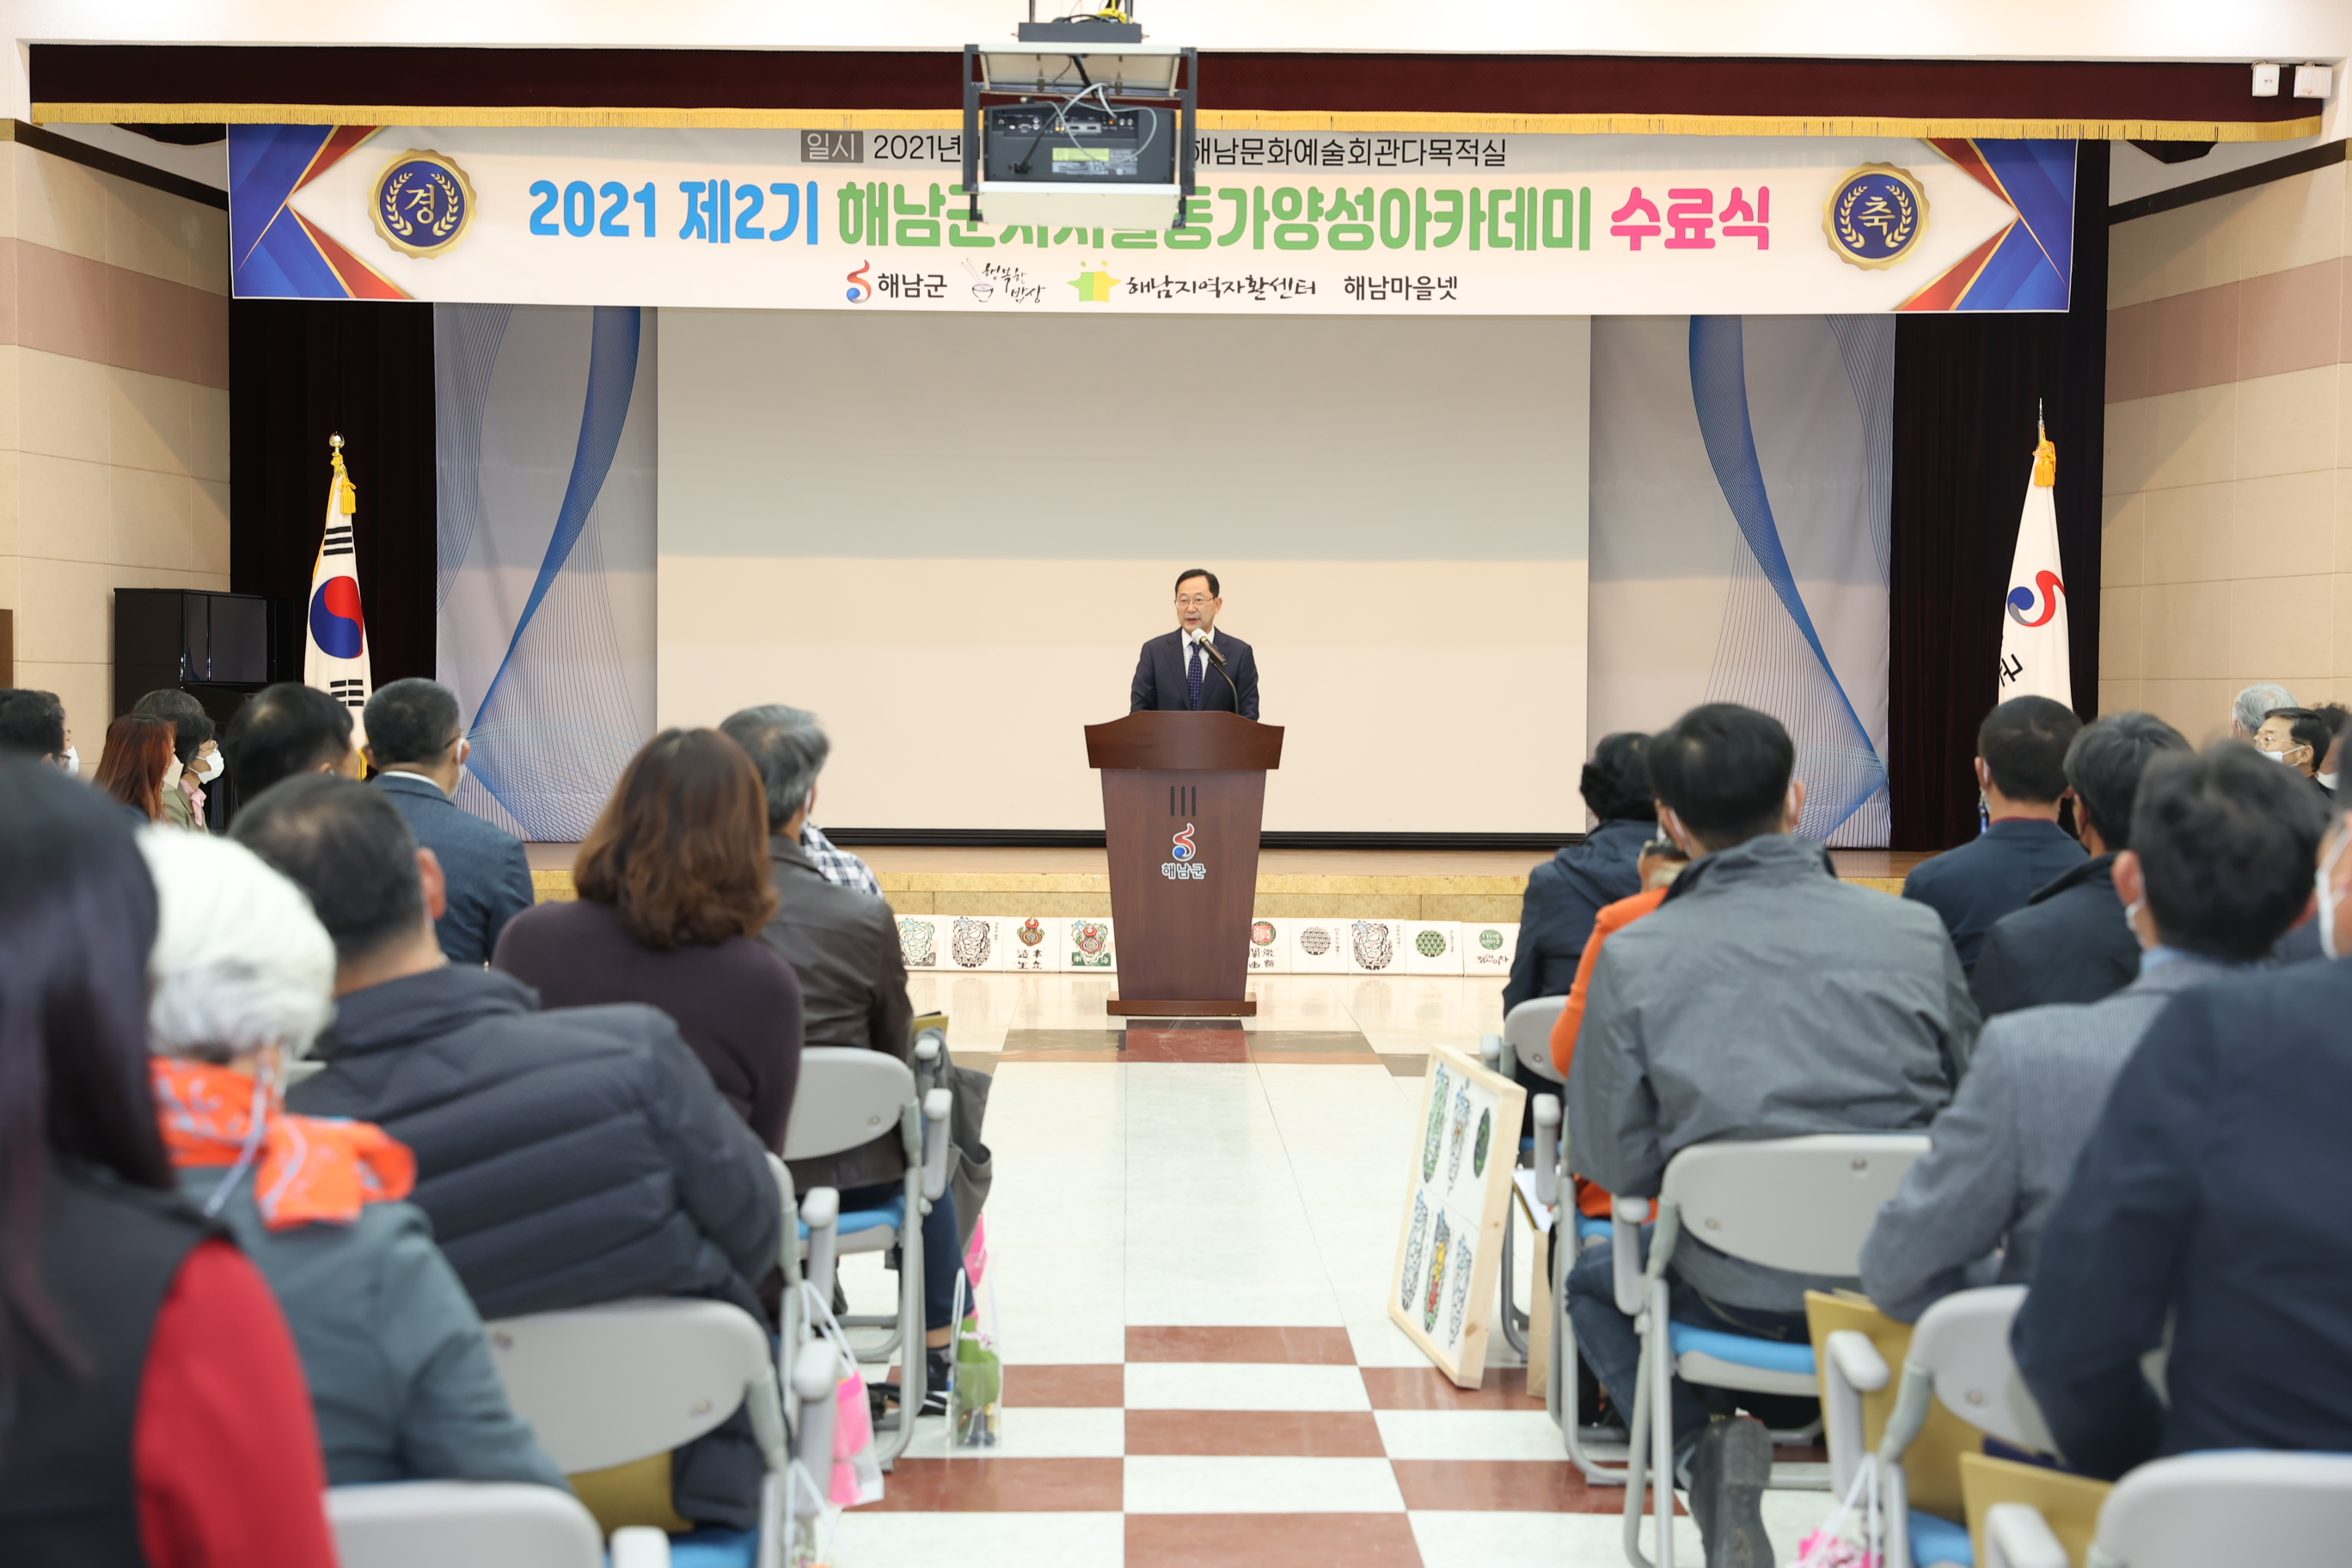 제2기 자치활동가 양성 아카데미 졸업식